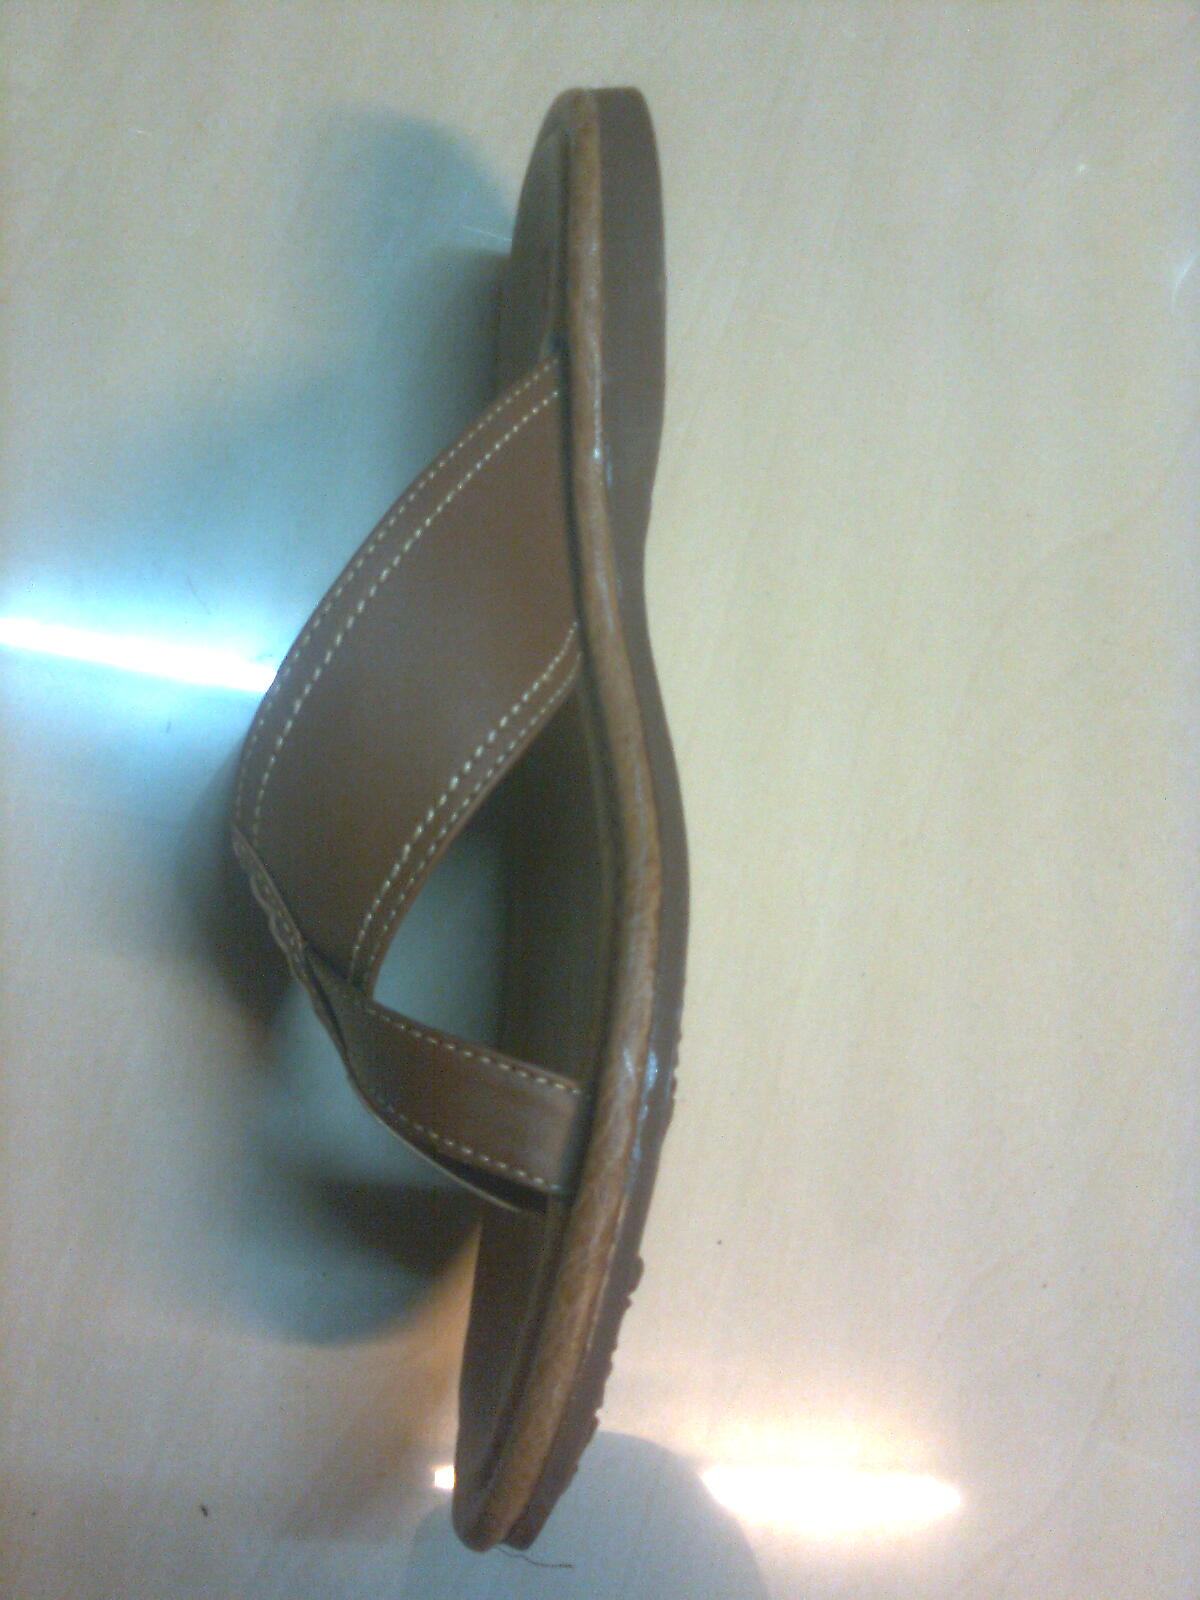  Sandal  laki laki Lk9002 kerajinan dari bahan kulit  Asli  